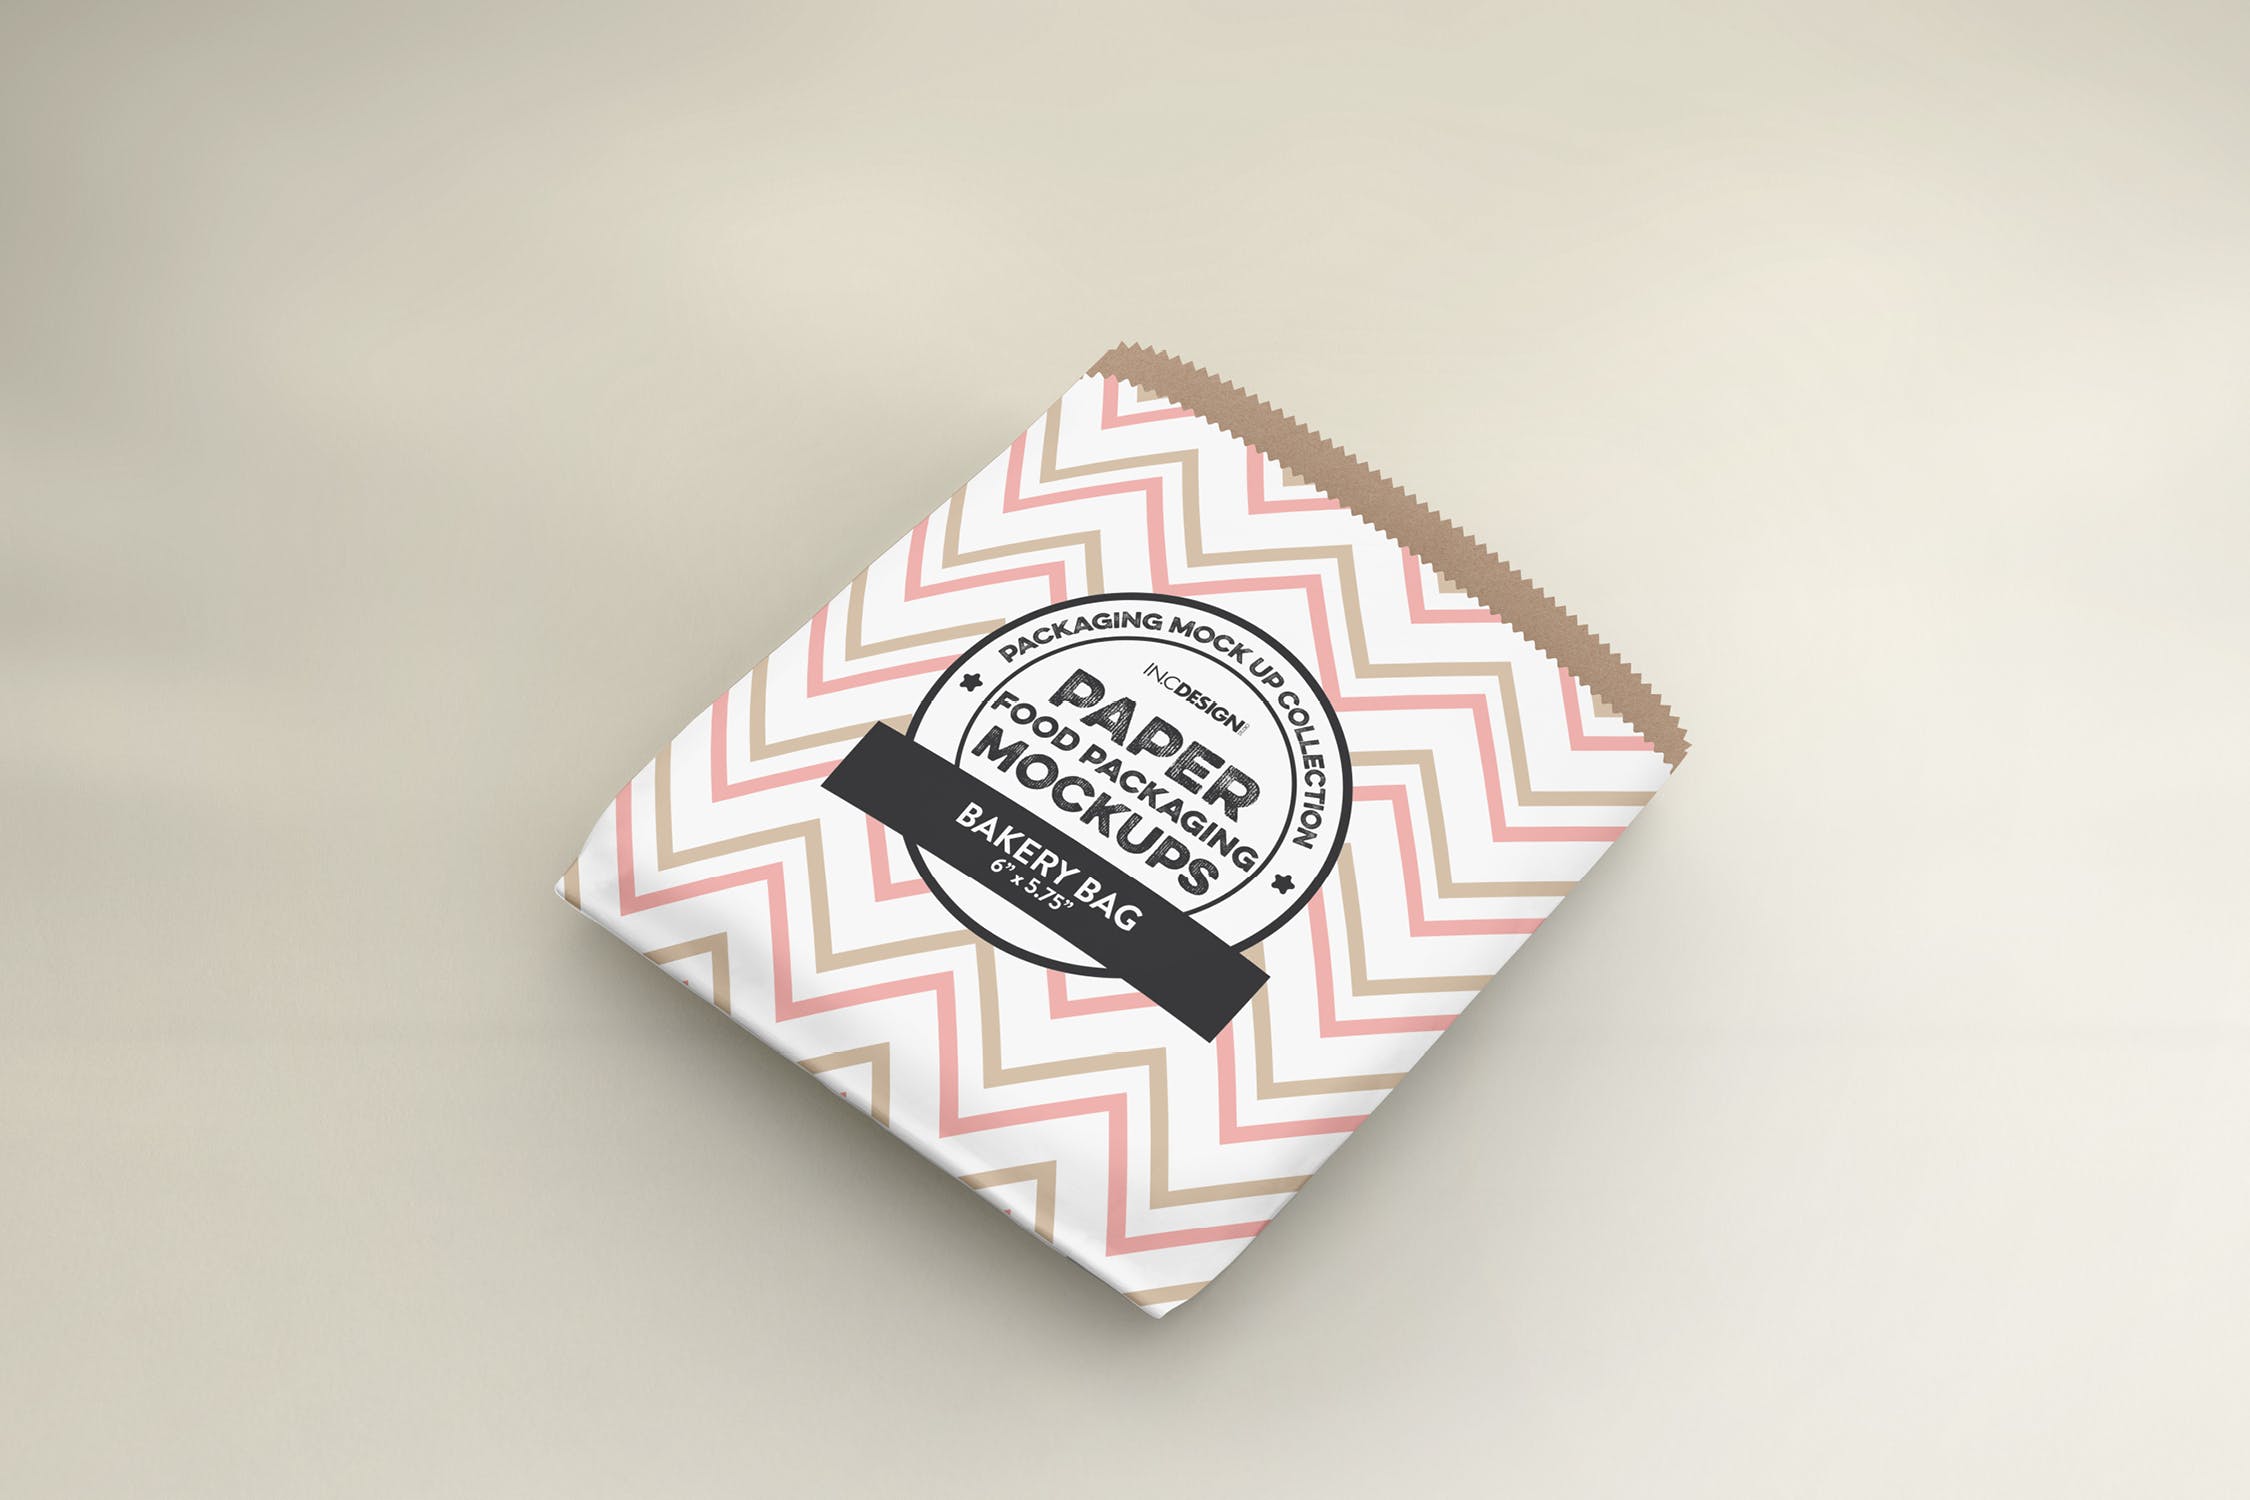 面包外带包装纸袋设计图第一素材精选 Flat Bakery Bag Packaging Mockup插图(3)